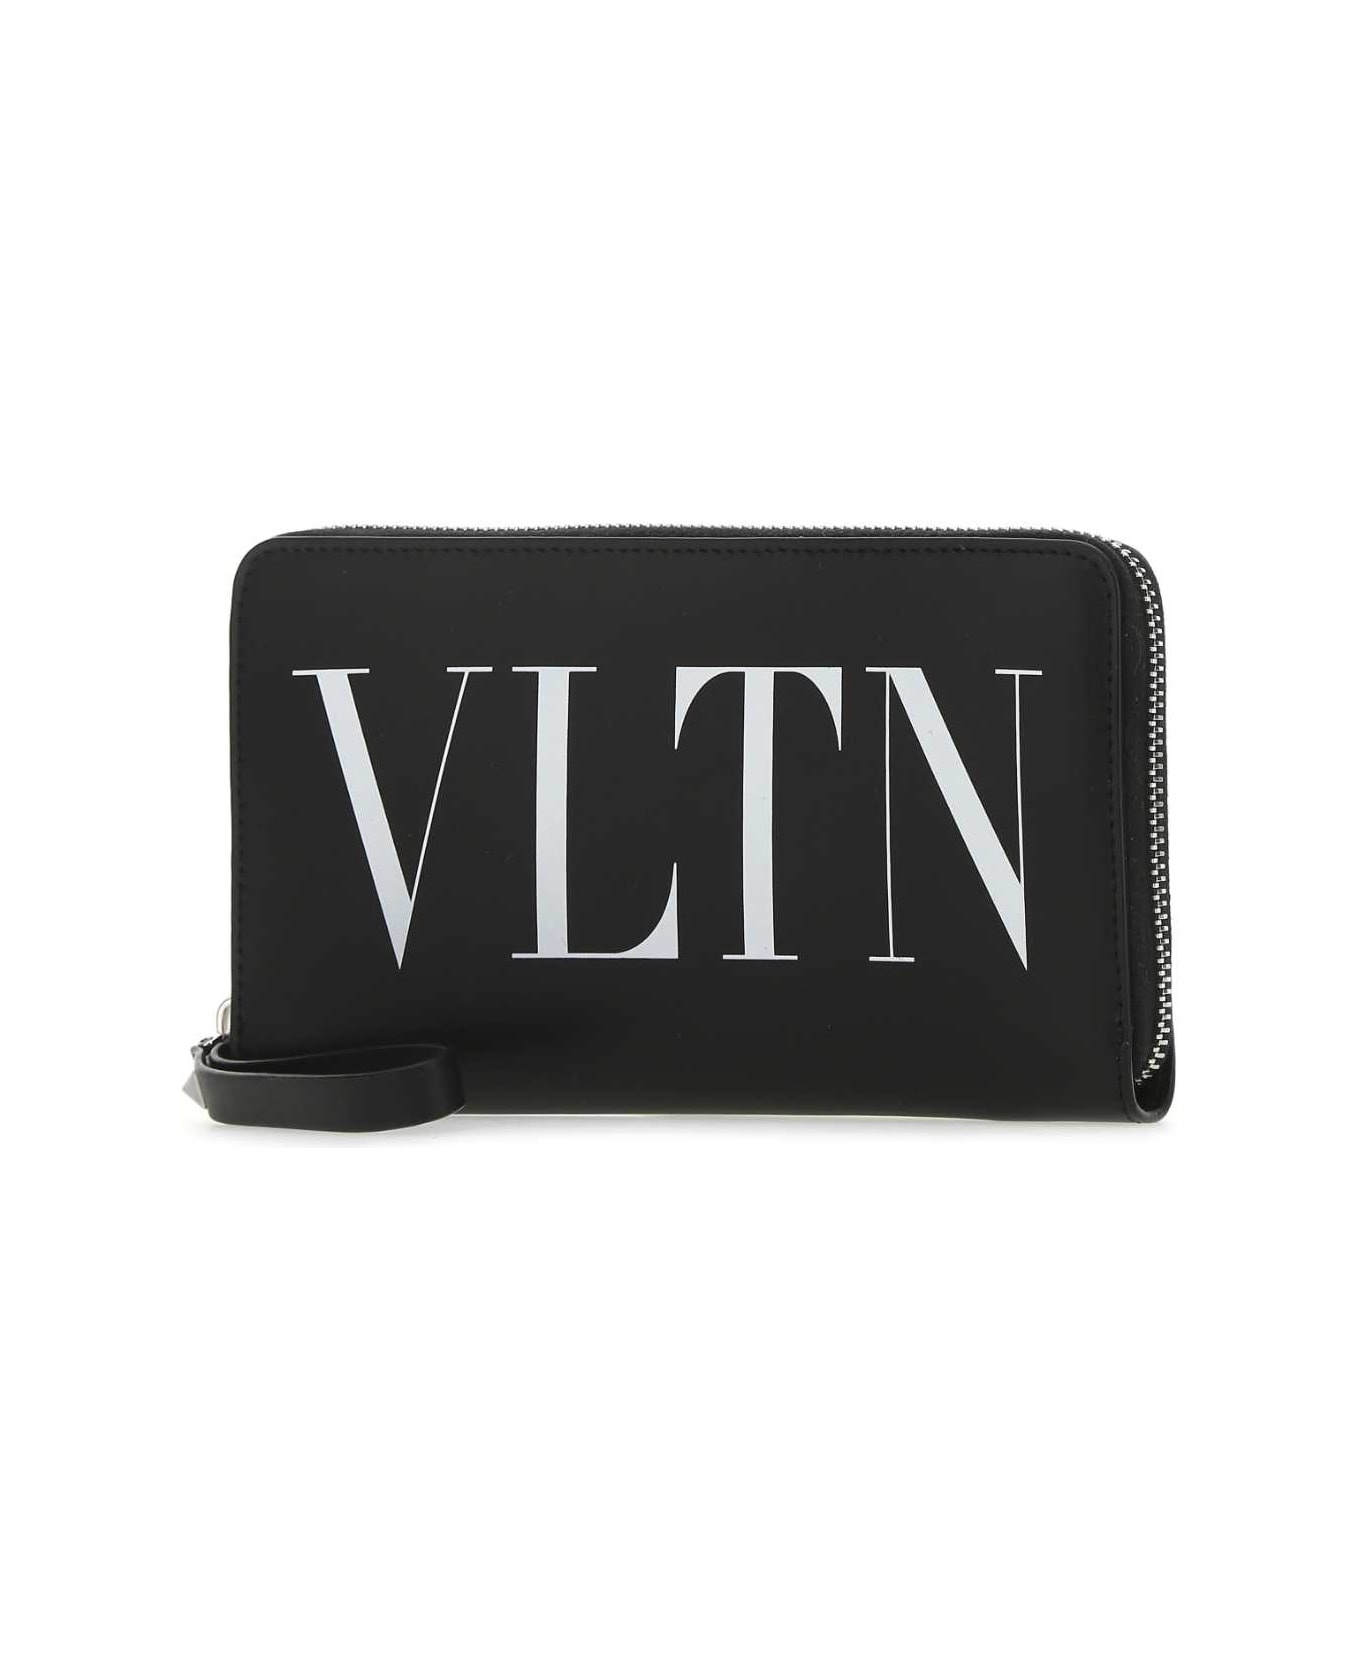 Black Leather Vltn Wallet - 2